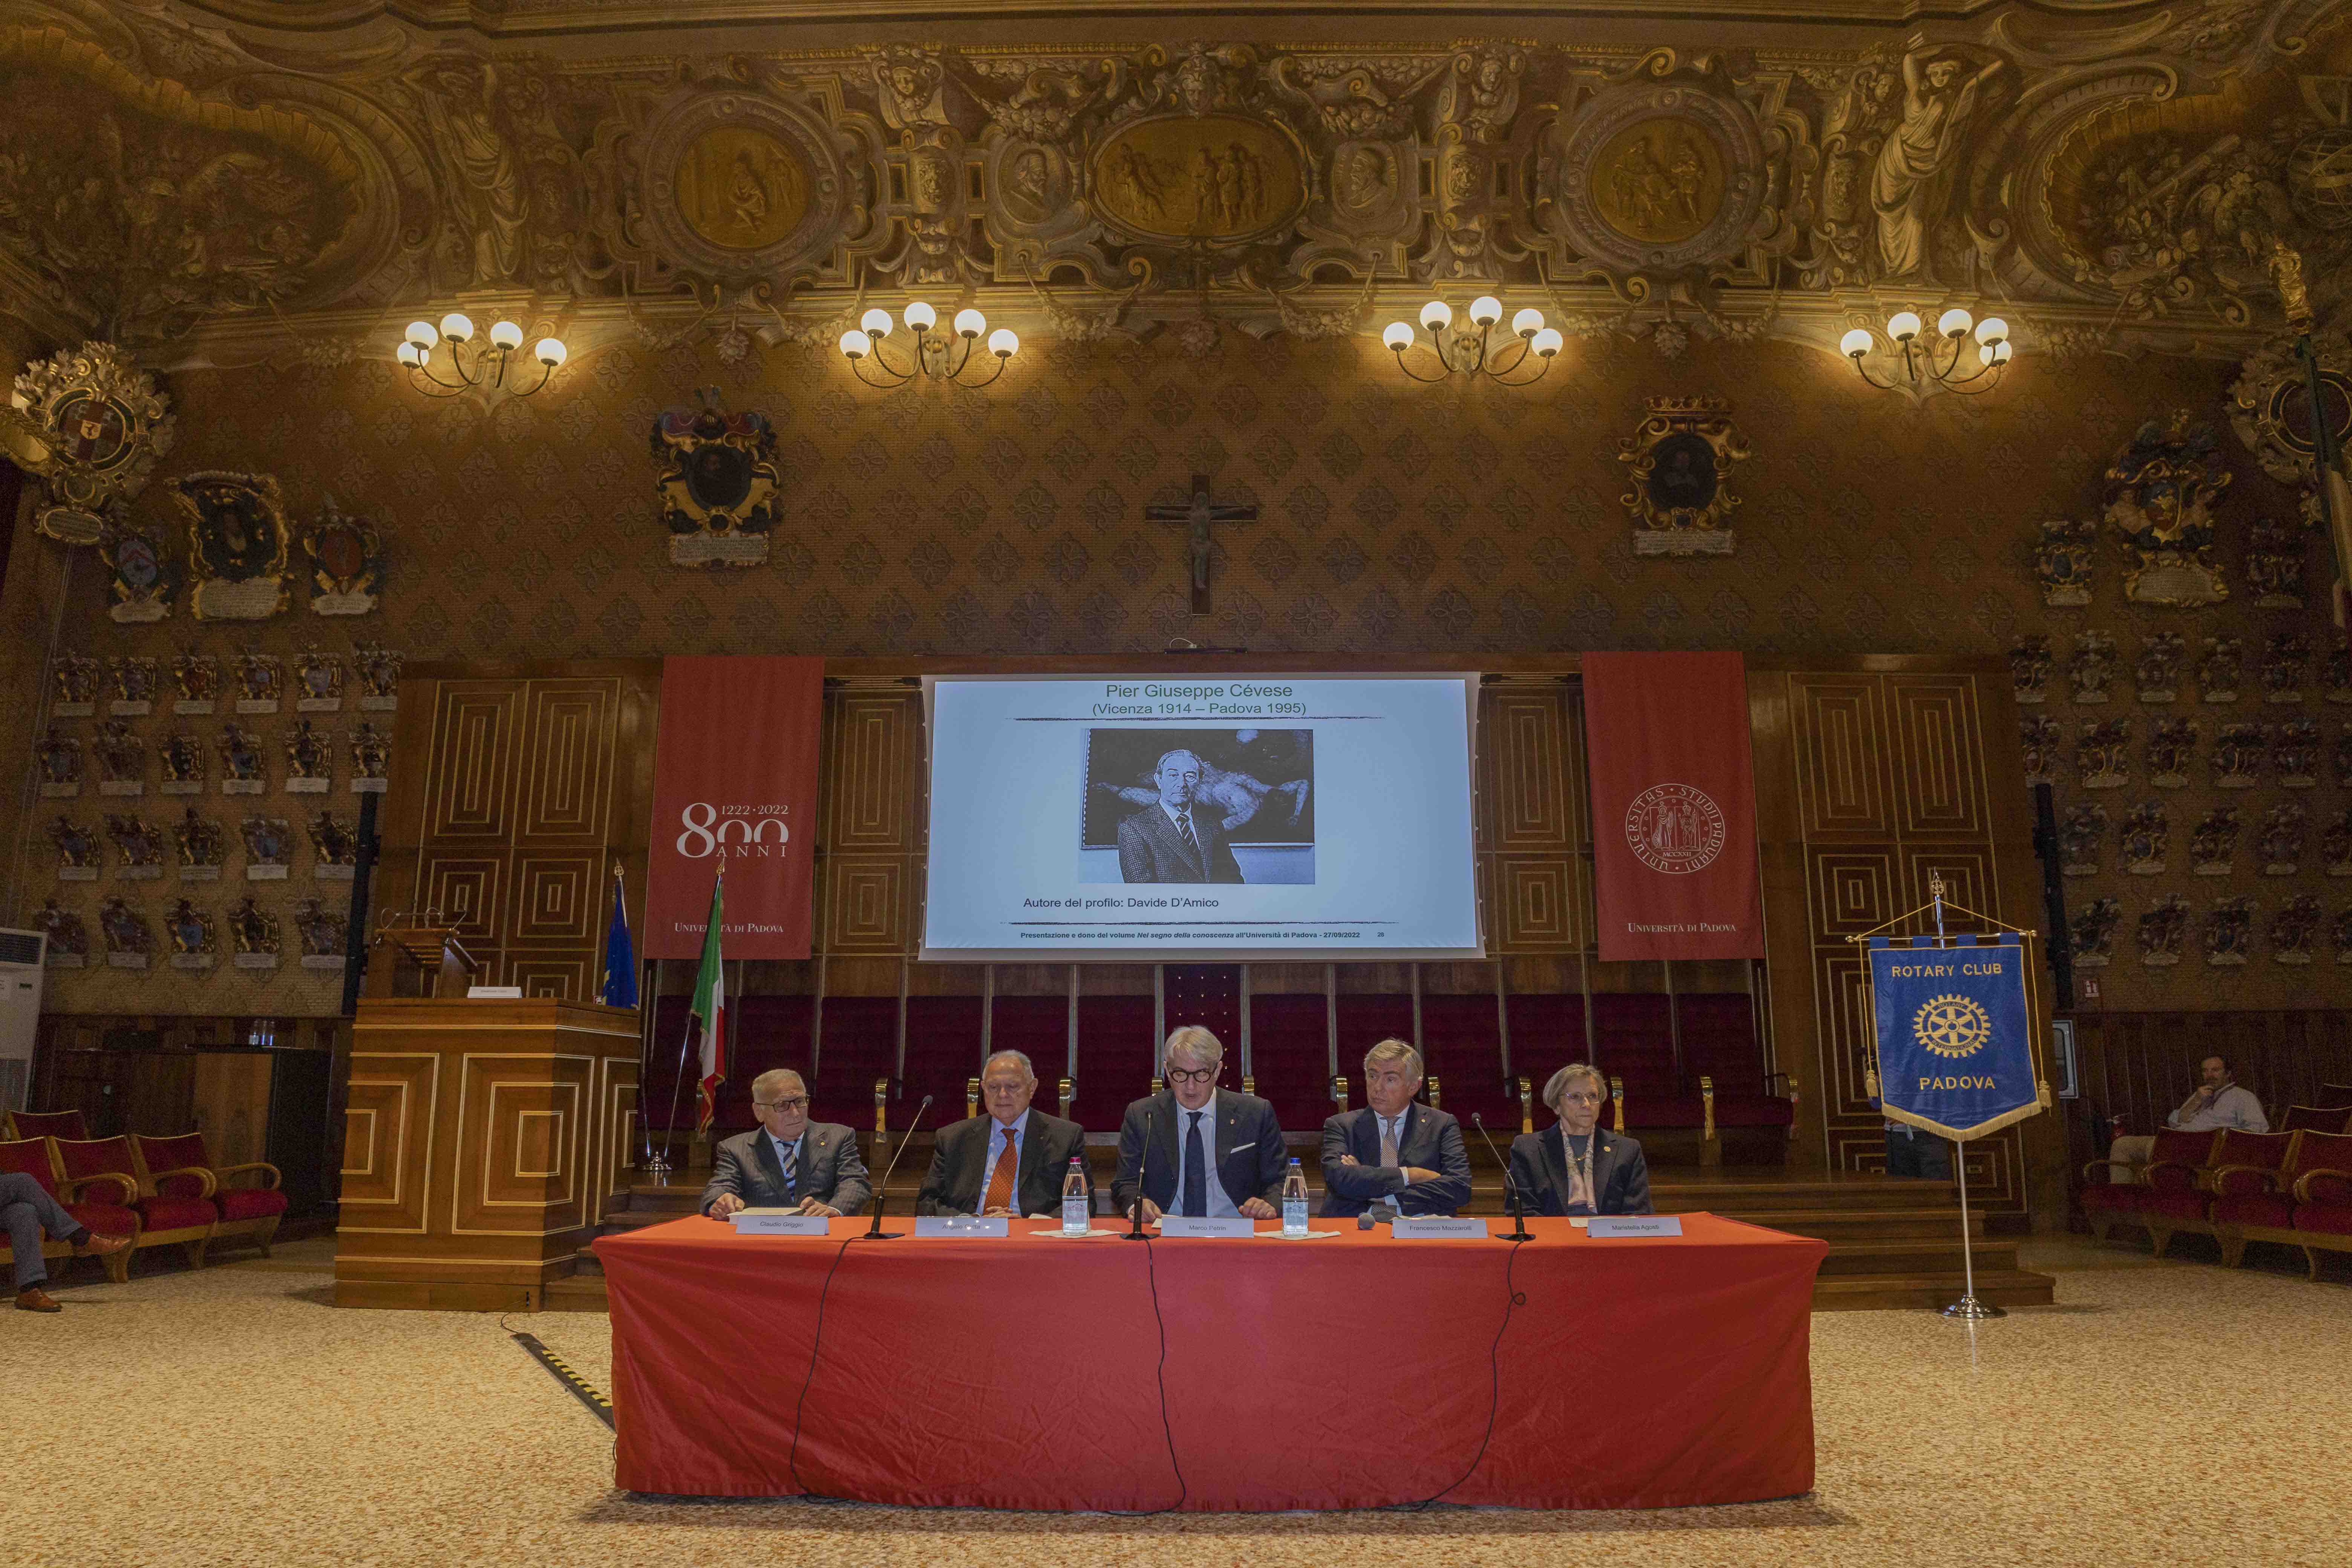 The speakers from right to left Agosti Mazzarolli Petrin Gatta Griggio